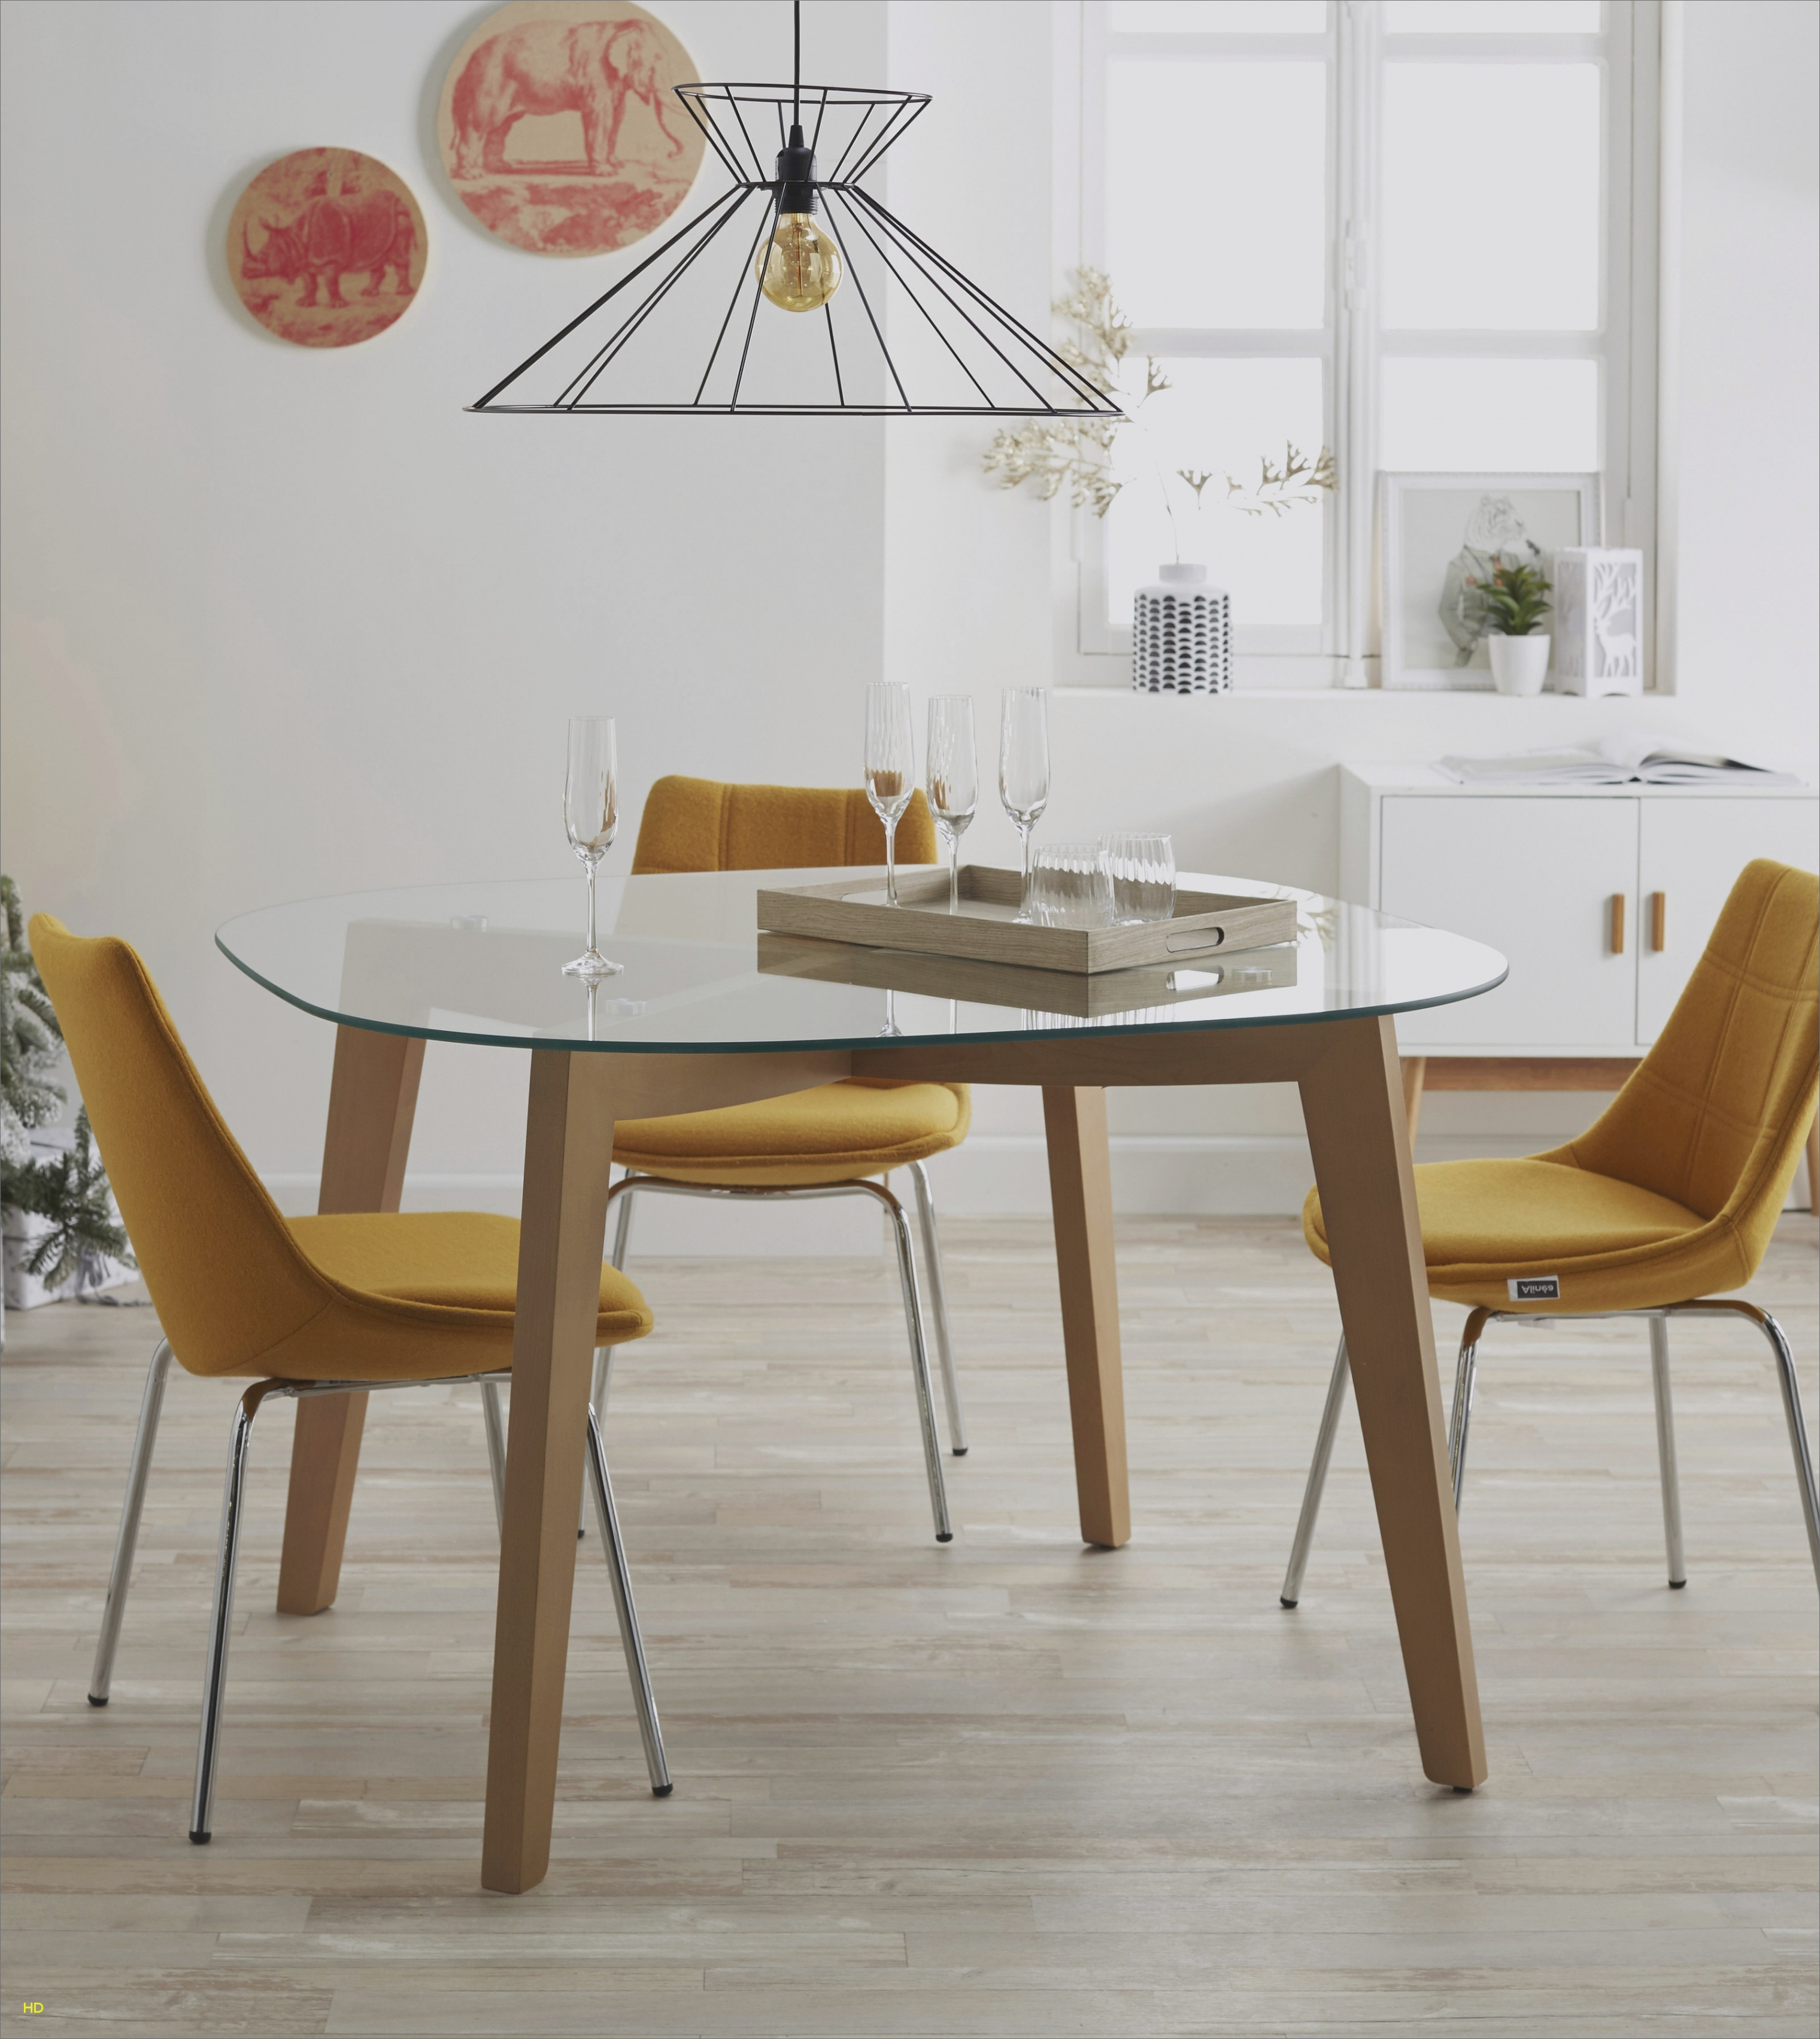 Table et chaise cuisine scandinave